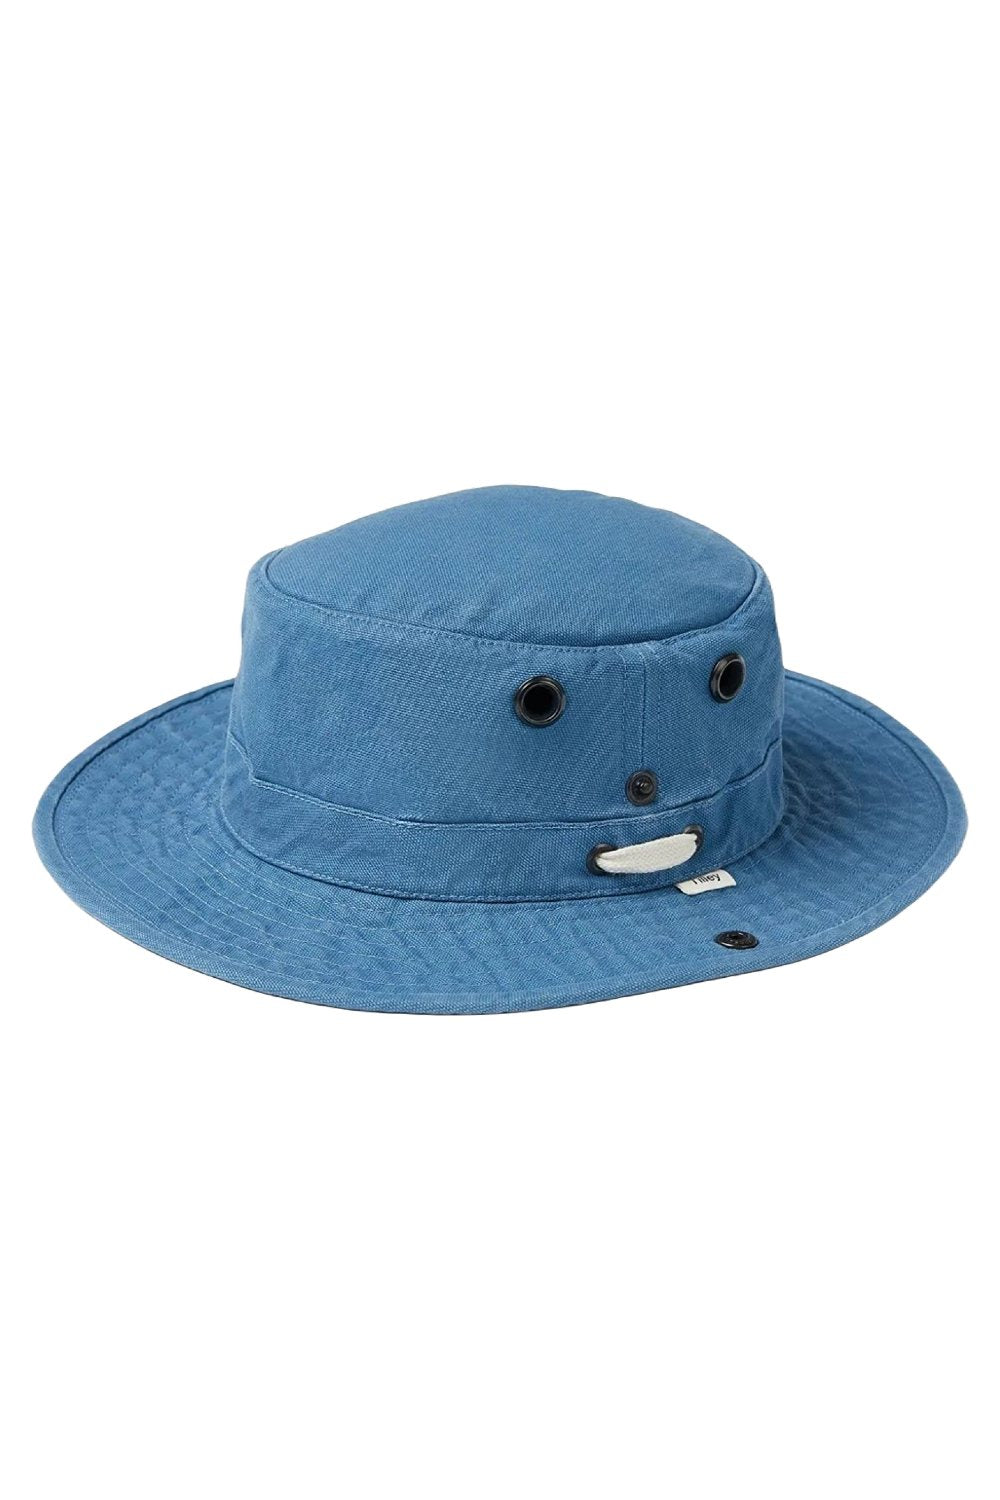 Tilley Hats Wanderer Hat In Denim Blue 